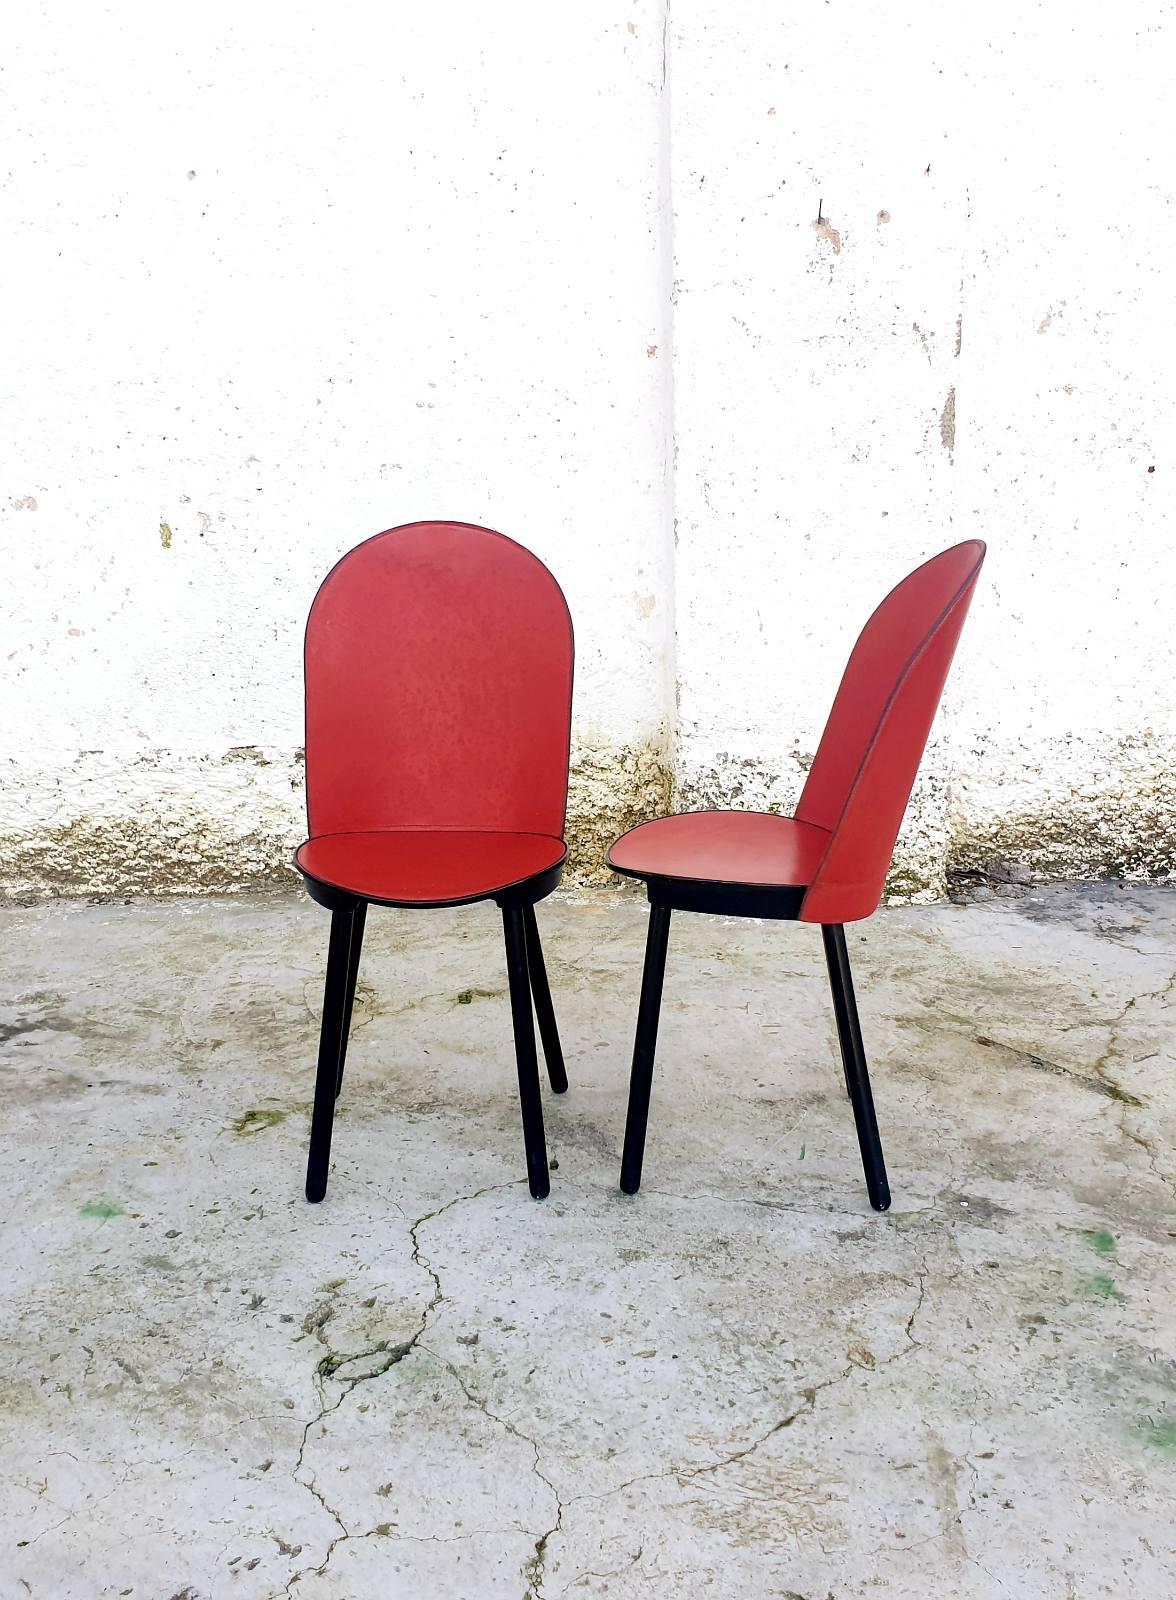 Vintage Dining Chairs wurden in den 80er Jahren von der italienischen Marke Zanotta entworfen und hergestellt.
Die Stühle sind mit einem Label versehen. 